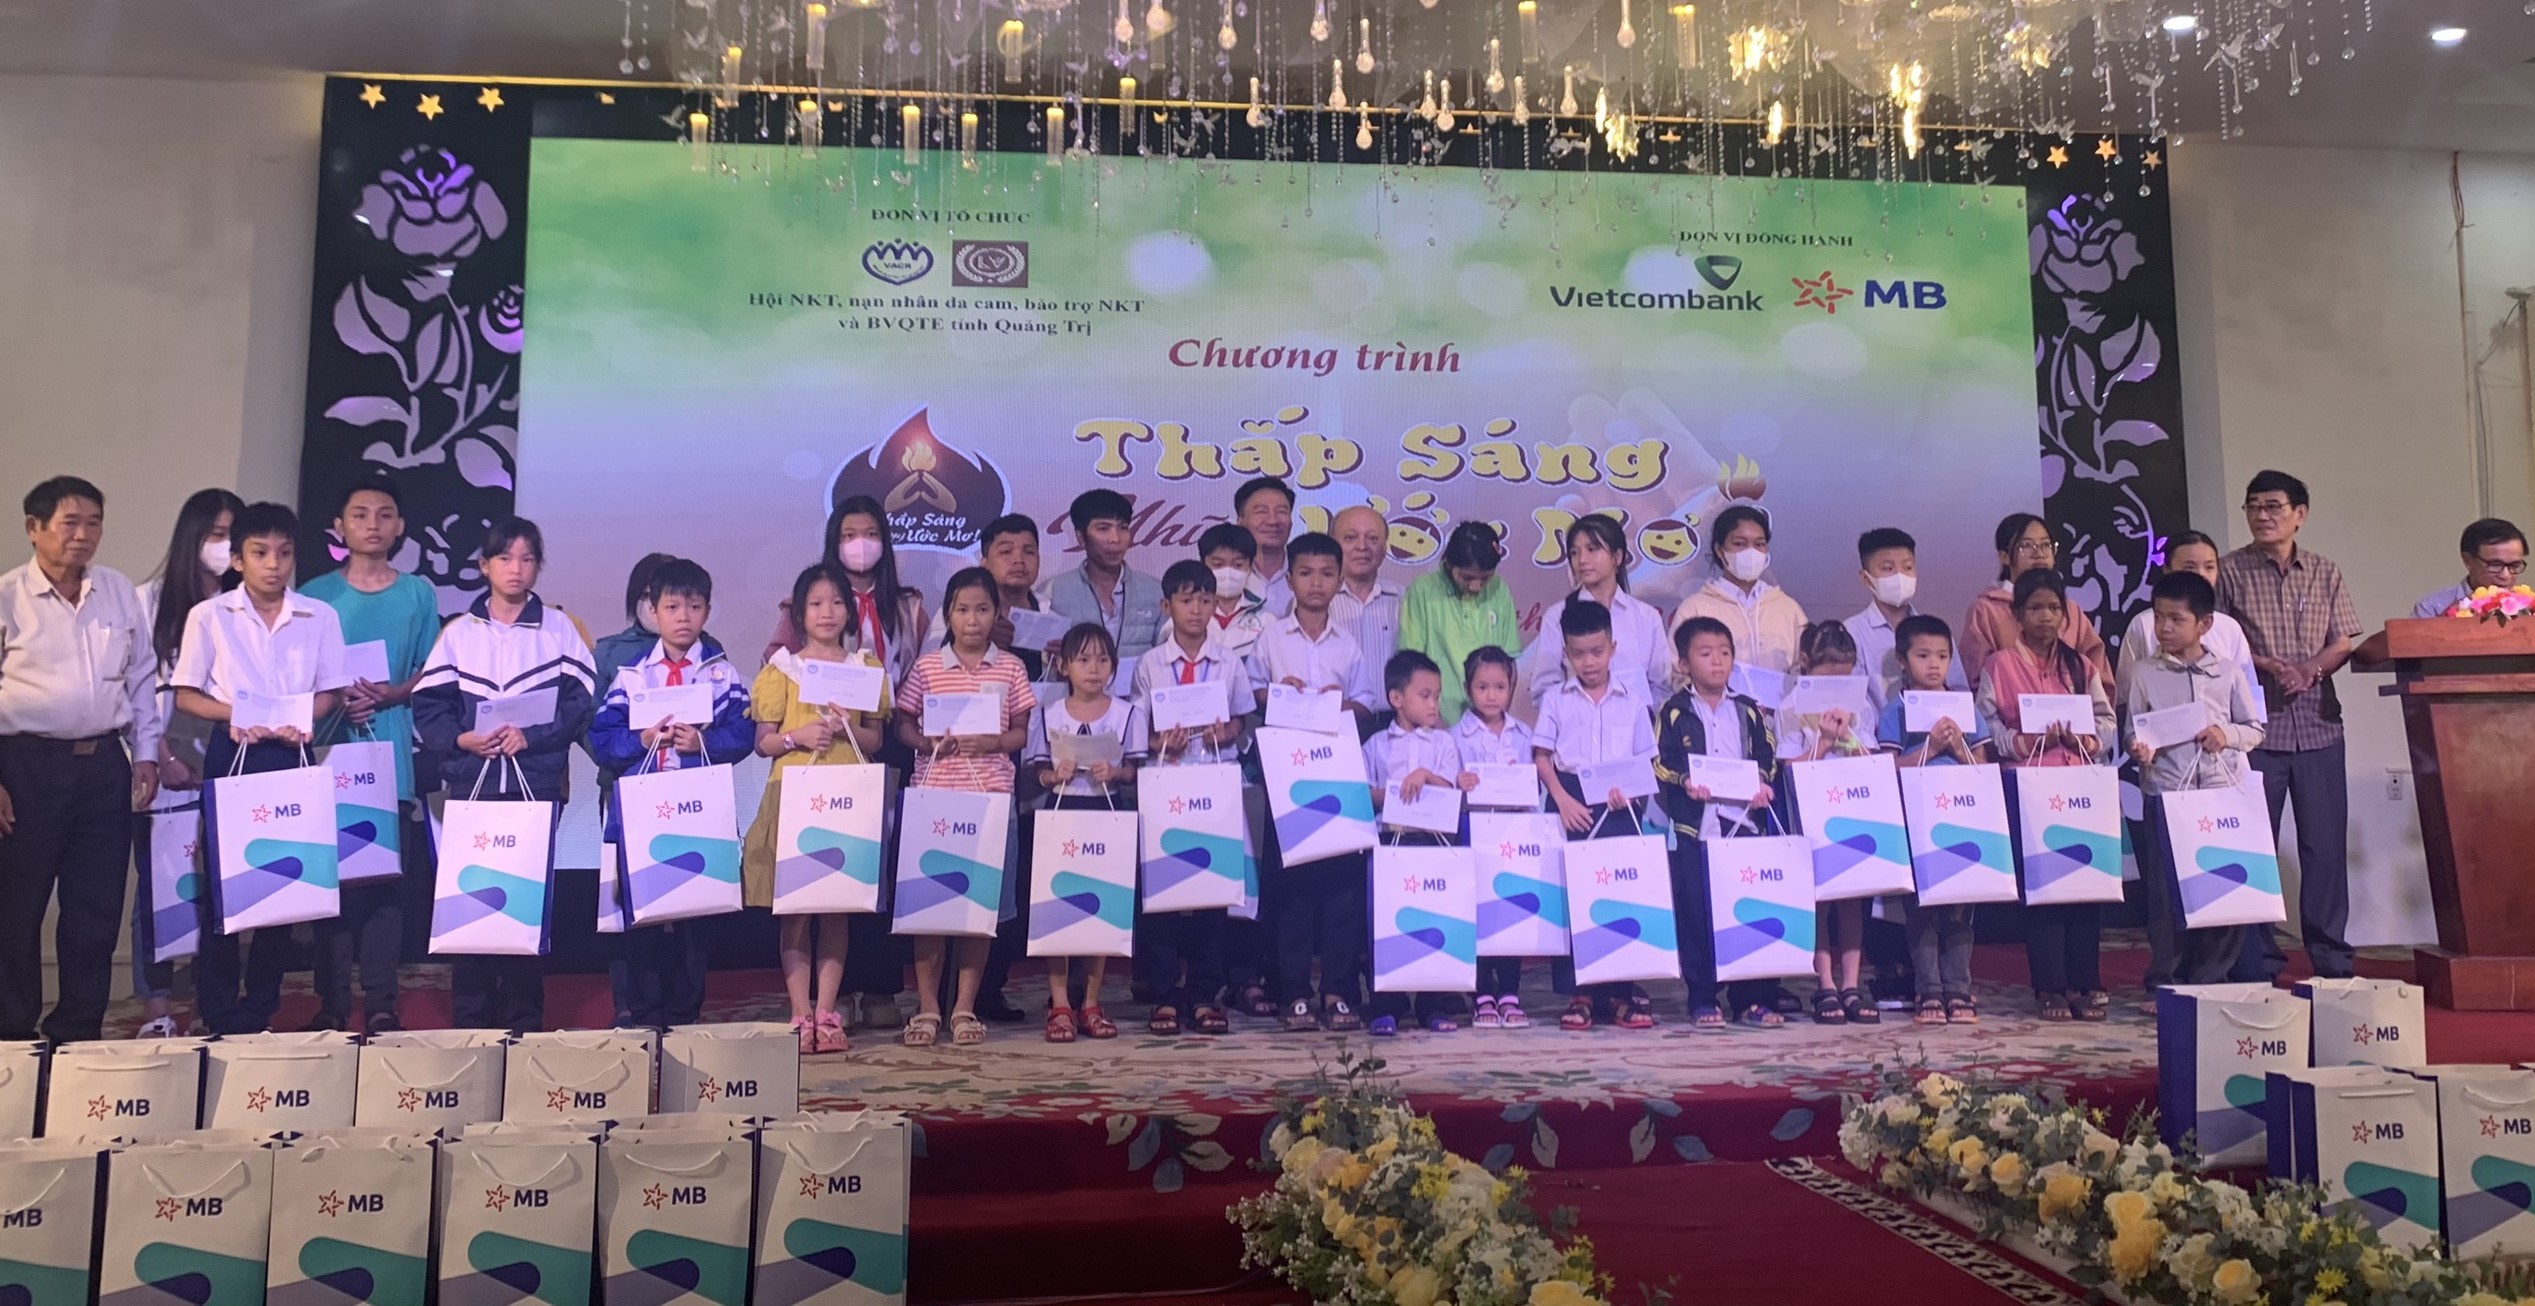 100 trẻ em nghèo tại Quảng Trị được nhận quà từ chương trình “Thắp sáng những ước mơ” lần thứ 8